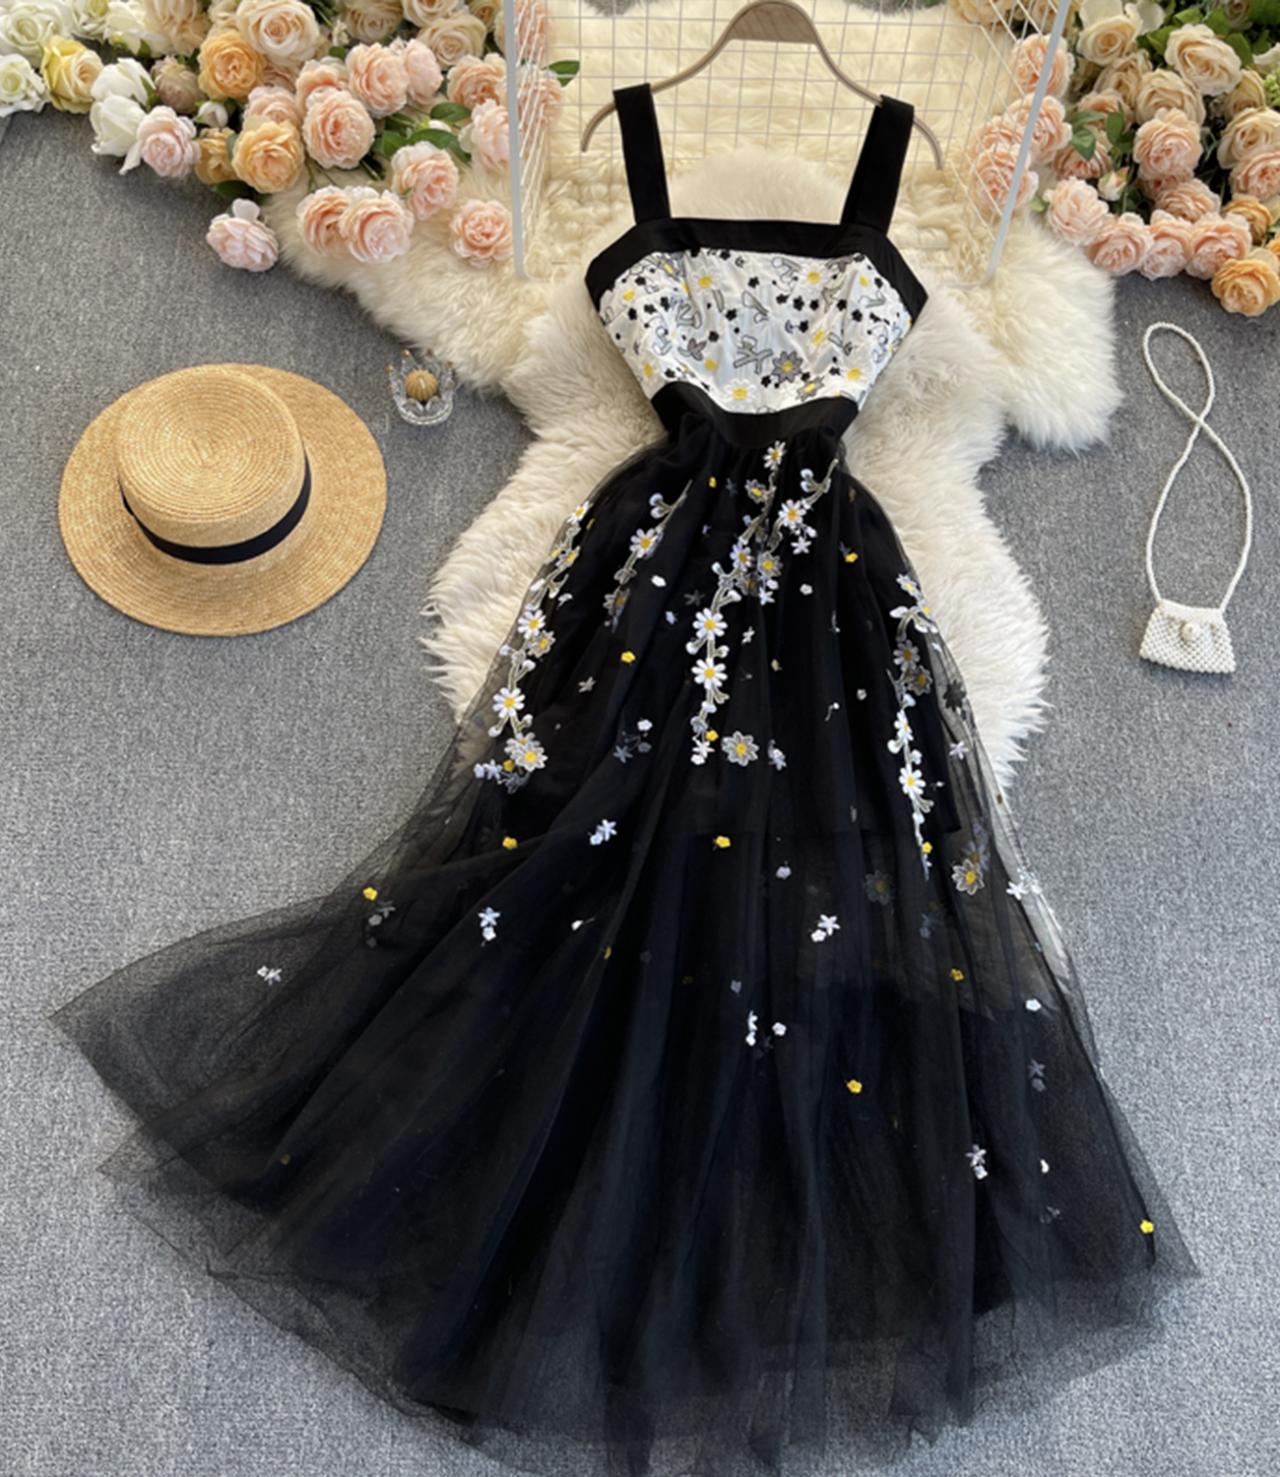 Cute Black Lace Flower Dress